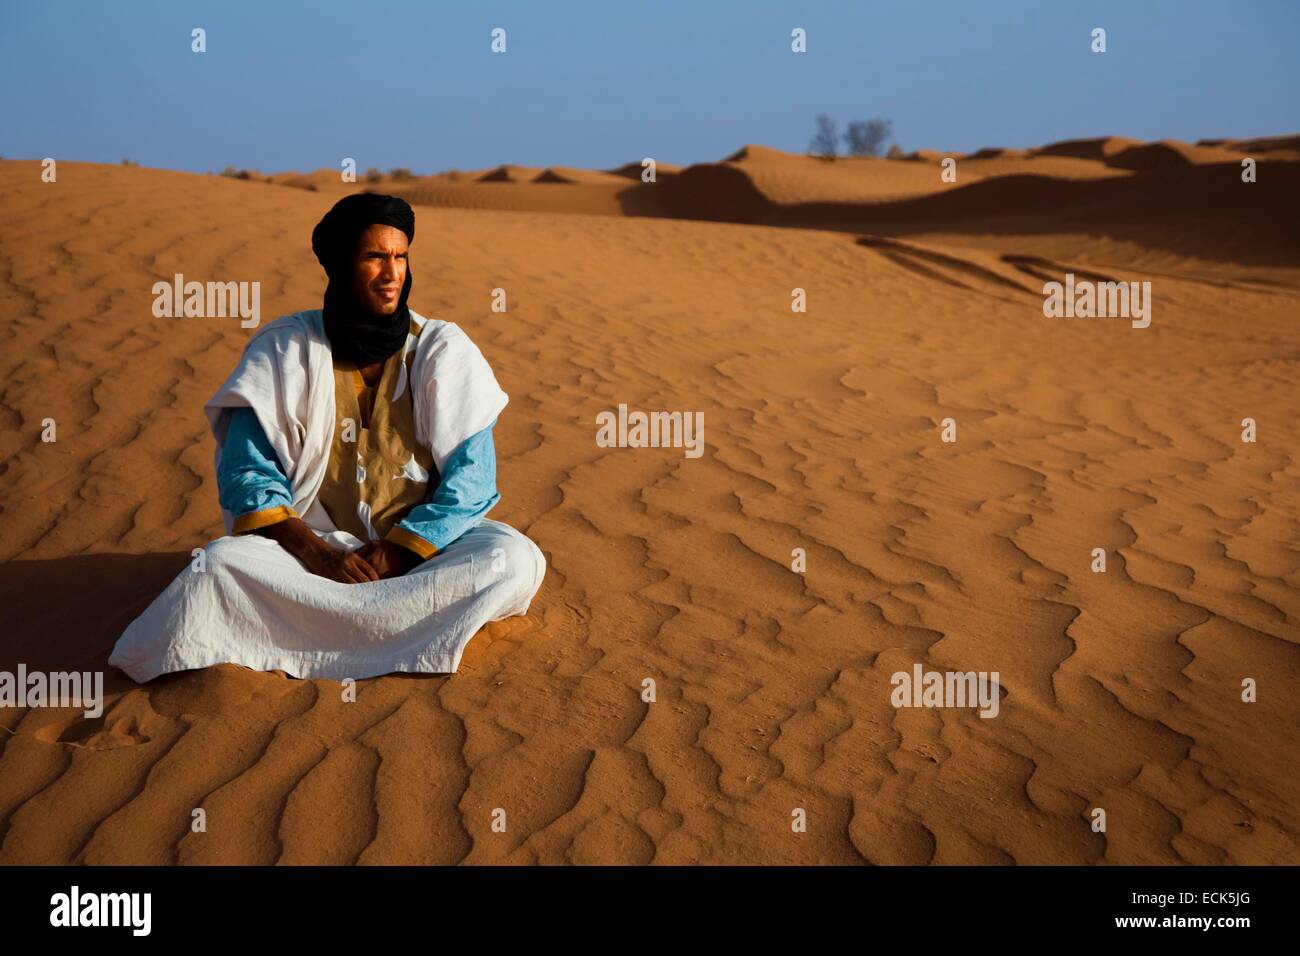 Le Maroc, Grand Sud, Chigaga Dunes, l'homme touareg Banque D'Images